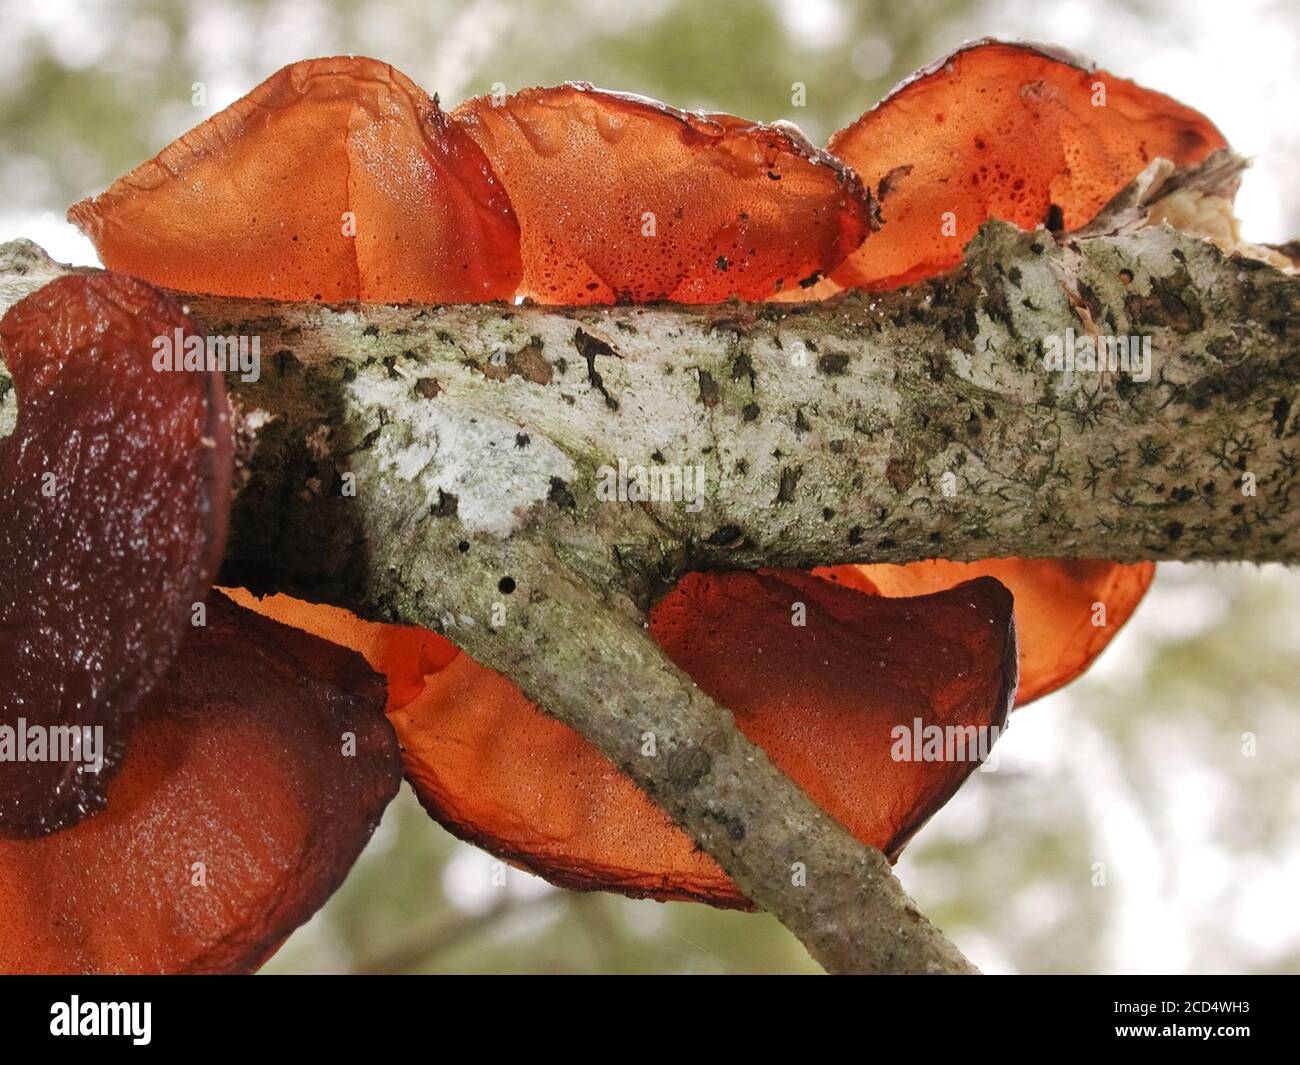 Questa è una forma di funghi trovati in ambienti naturali in tutto il mondo.; questo si trova in un'area boschiva della Florida centro-settentrionale. Pappa Fungo Foto Stock